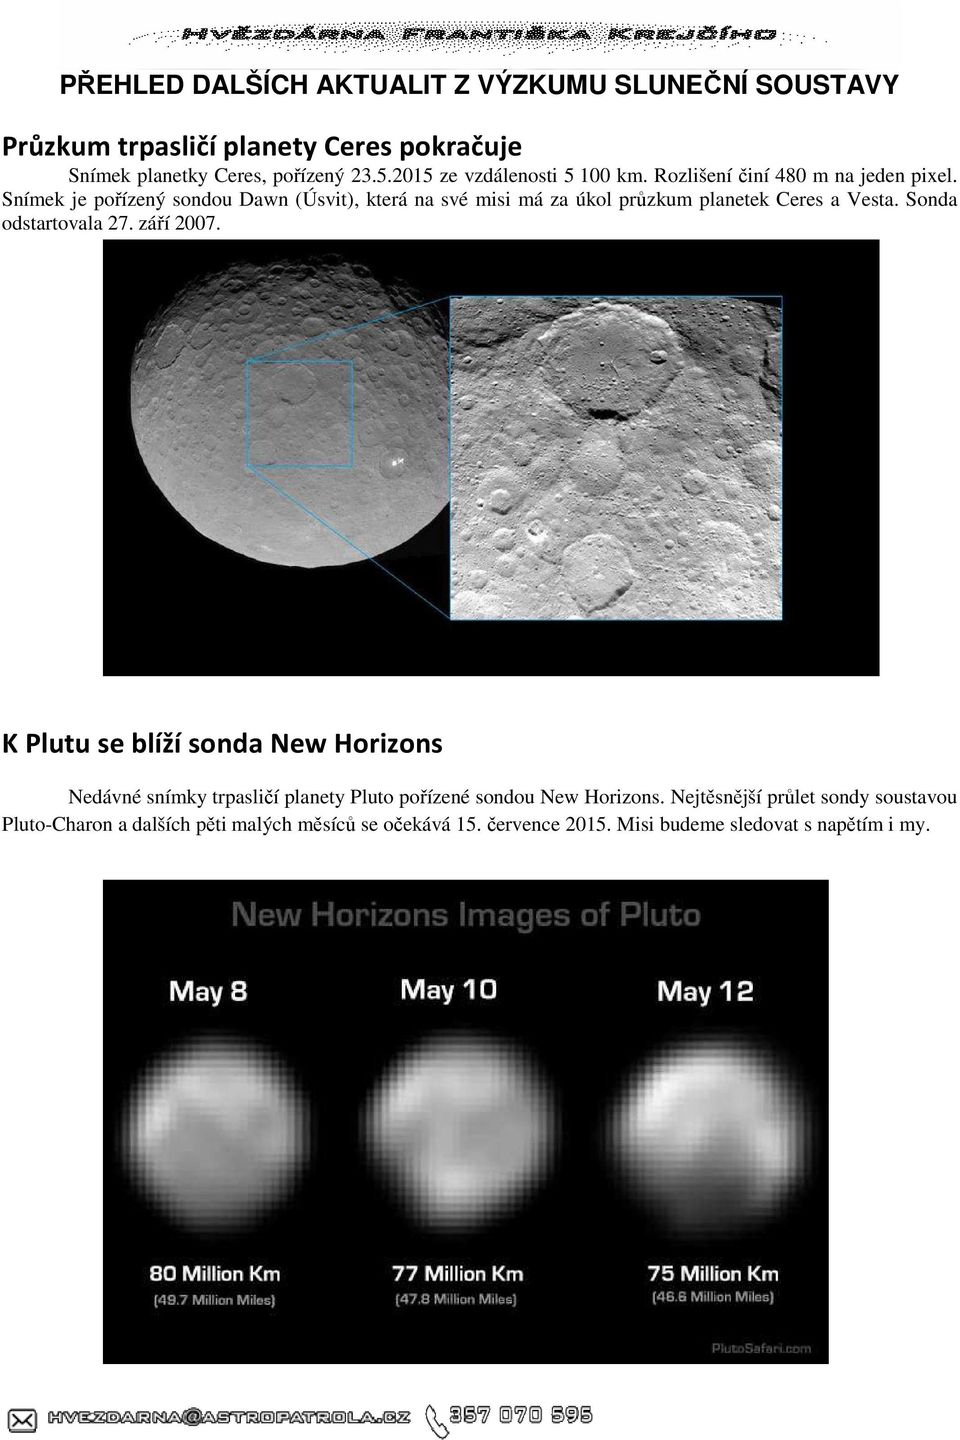 Snímek je pořízený sondou Dawn (Úsvit), která na své misi má za úkol průzkum planetek Ceres a Vesta. Sonda odstartovala 27. září 2007.